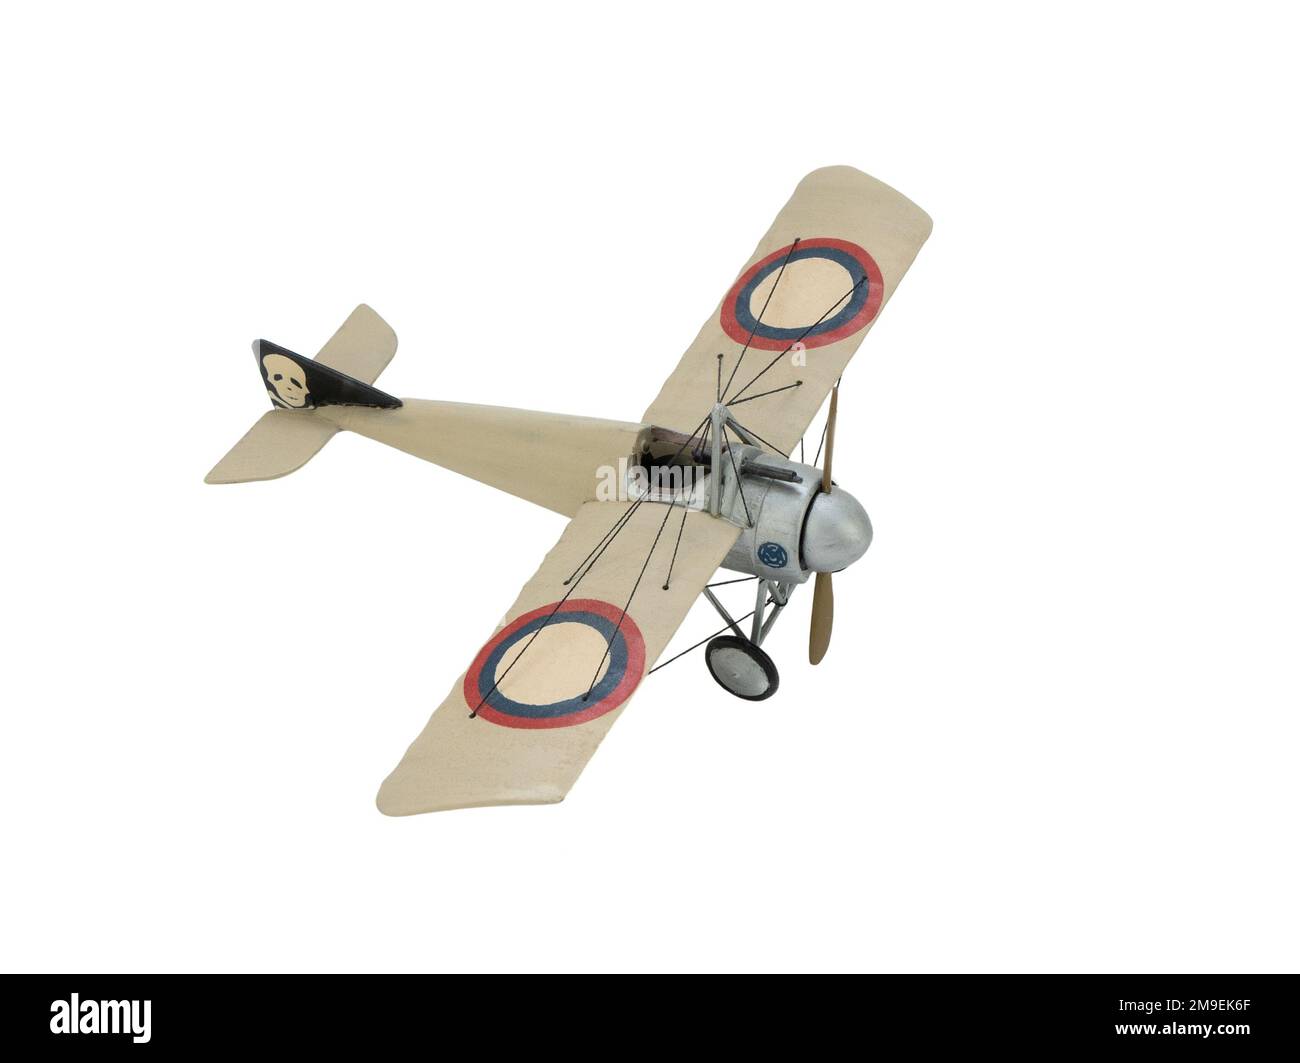 Modello plastico del Morane Saulnier tipo i - modifica del famoso aereo da combattimento francese, isolato. Militaire aereo con mitragliatrice Foto Stock